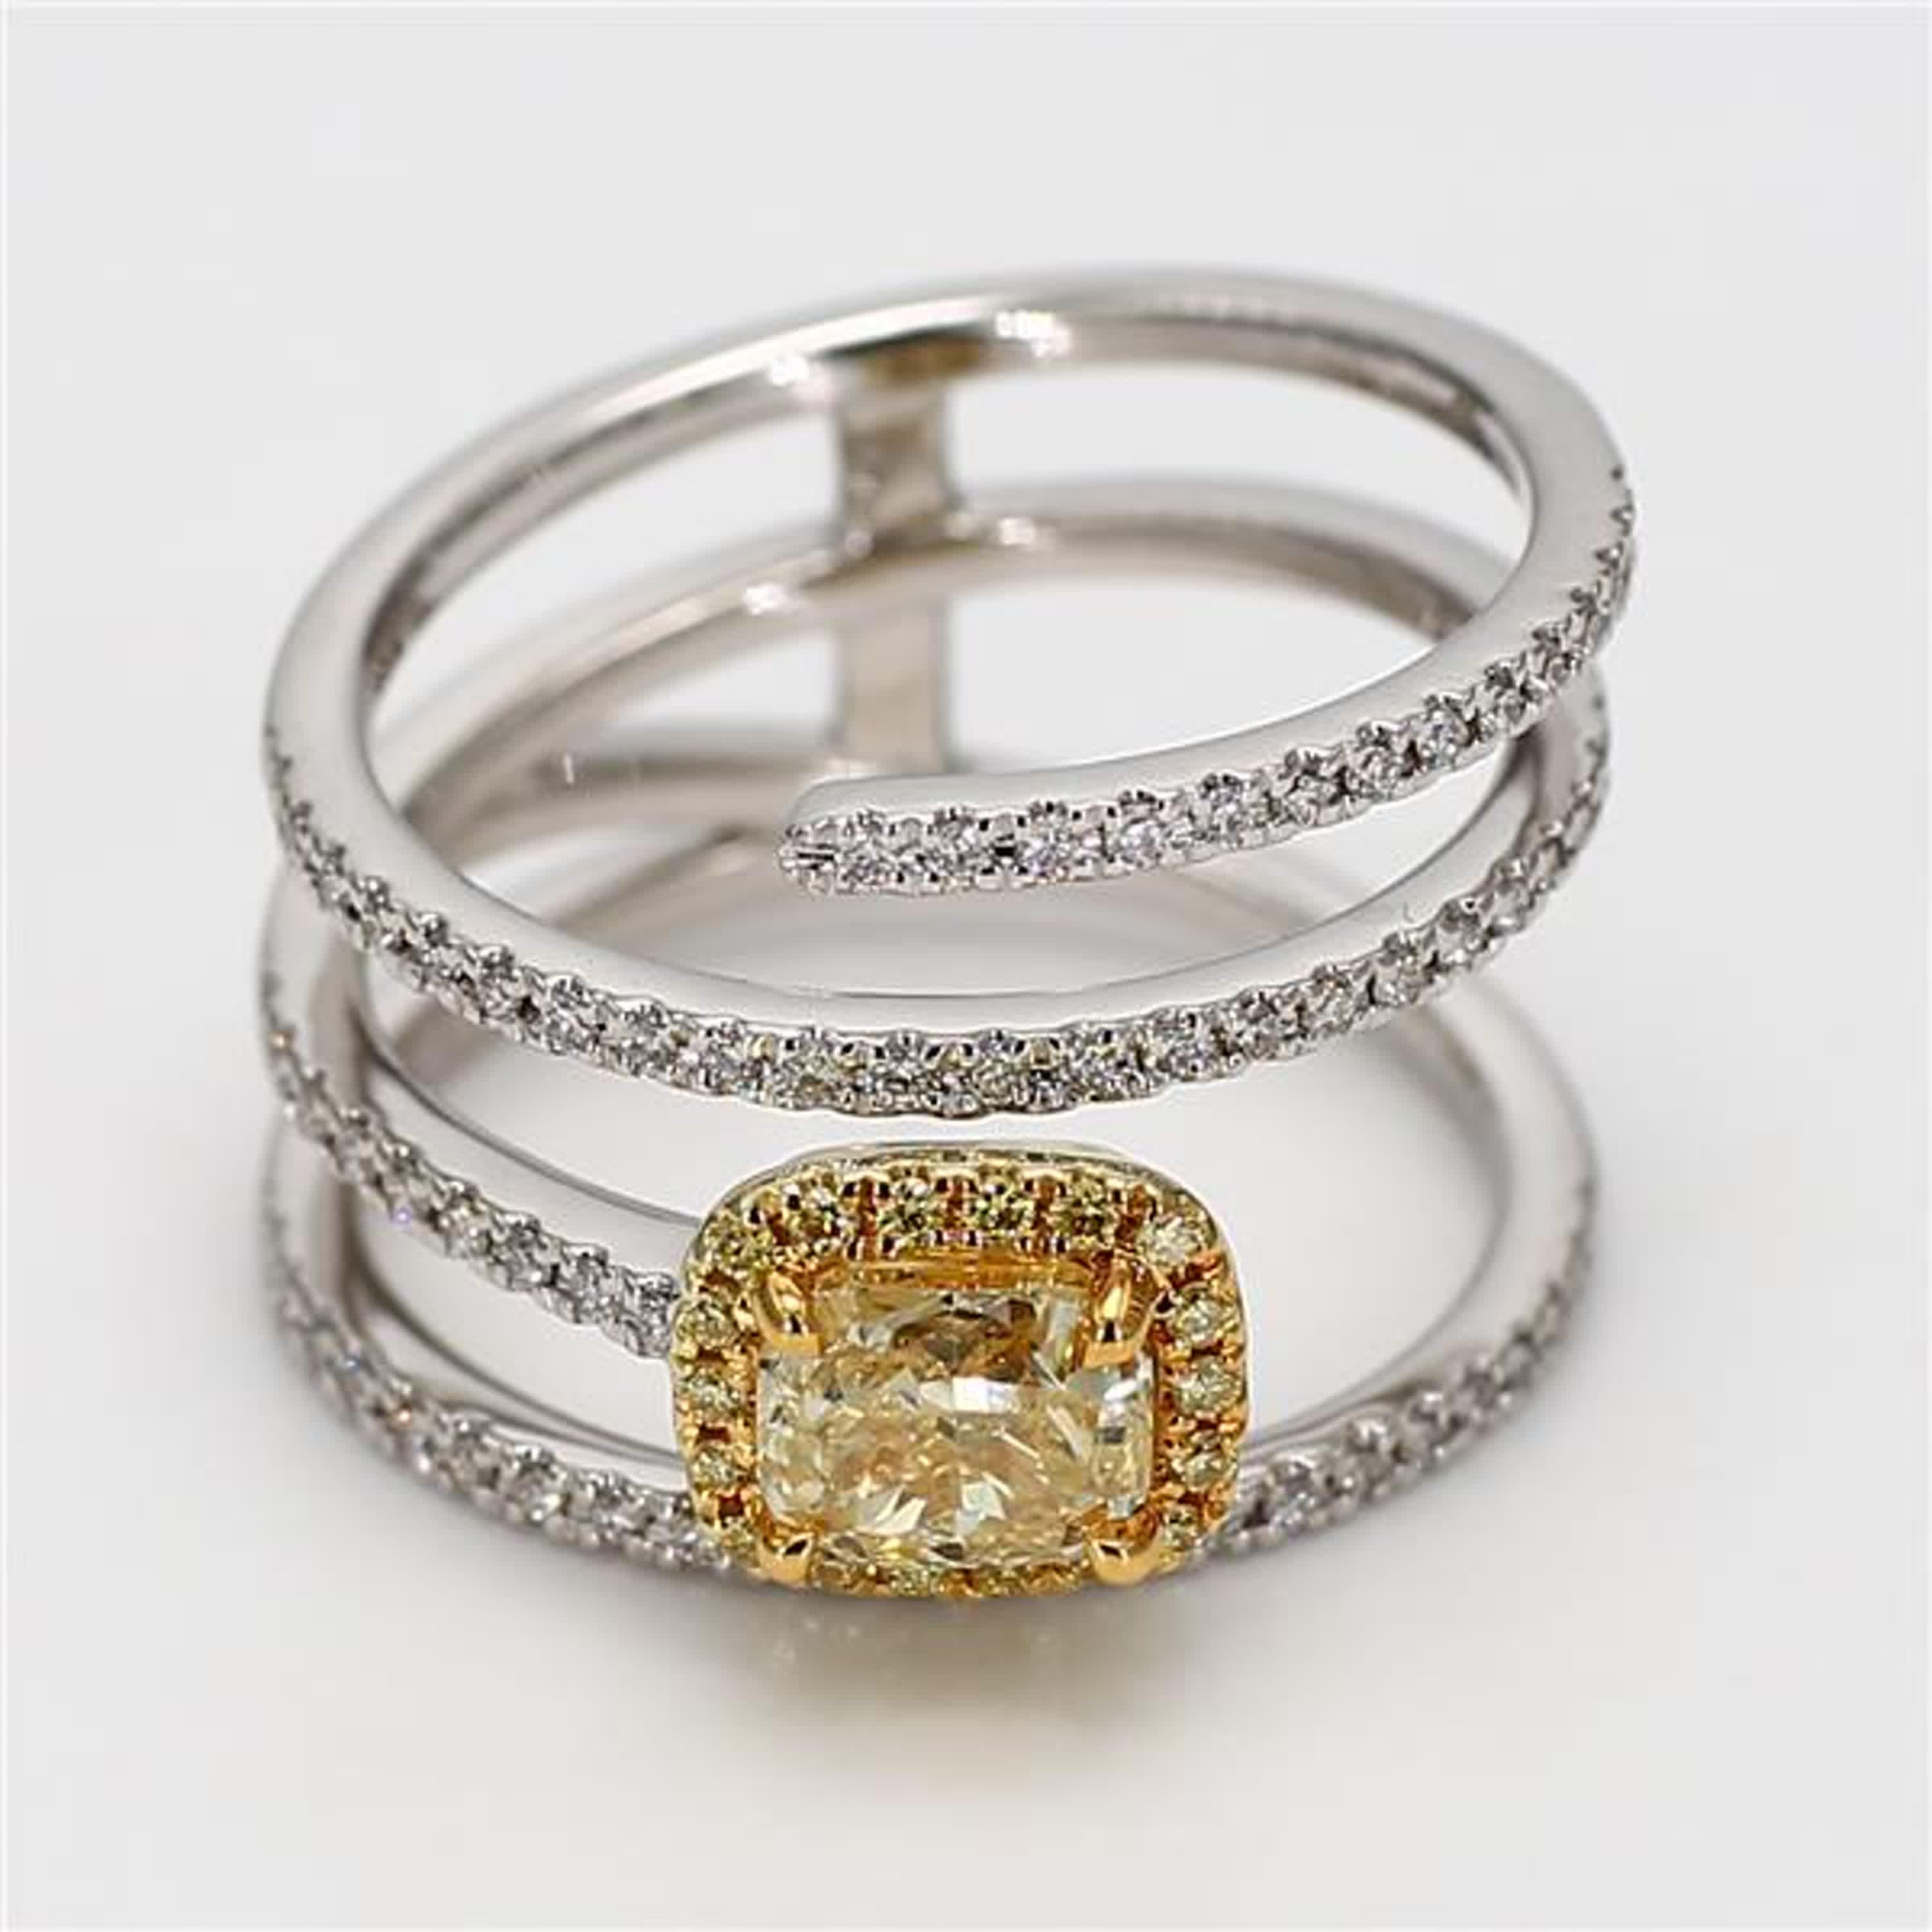 La bague classique en diamant certifiée GIA de Raregemworld. Monté dans une belle monture en or jaune et blanc 18 carats avec un diamant jaune naturel de taille radieuse. Le diamant jaune est entouré d'un méli-mélo de diamants ronds naturels jaunes